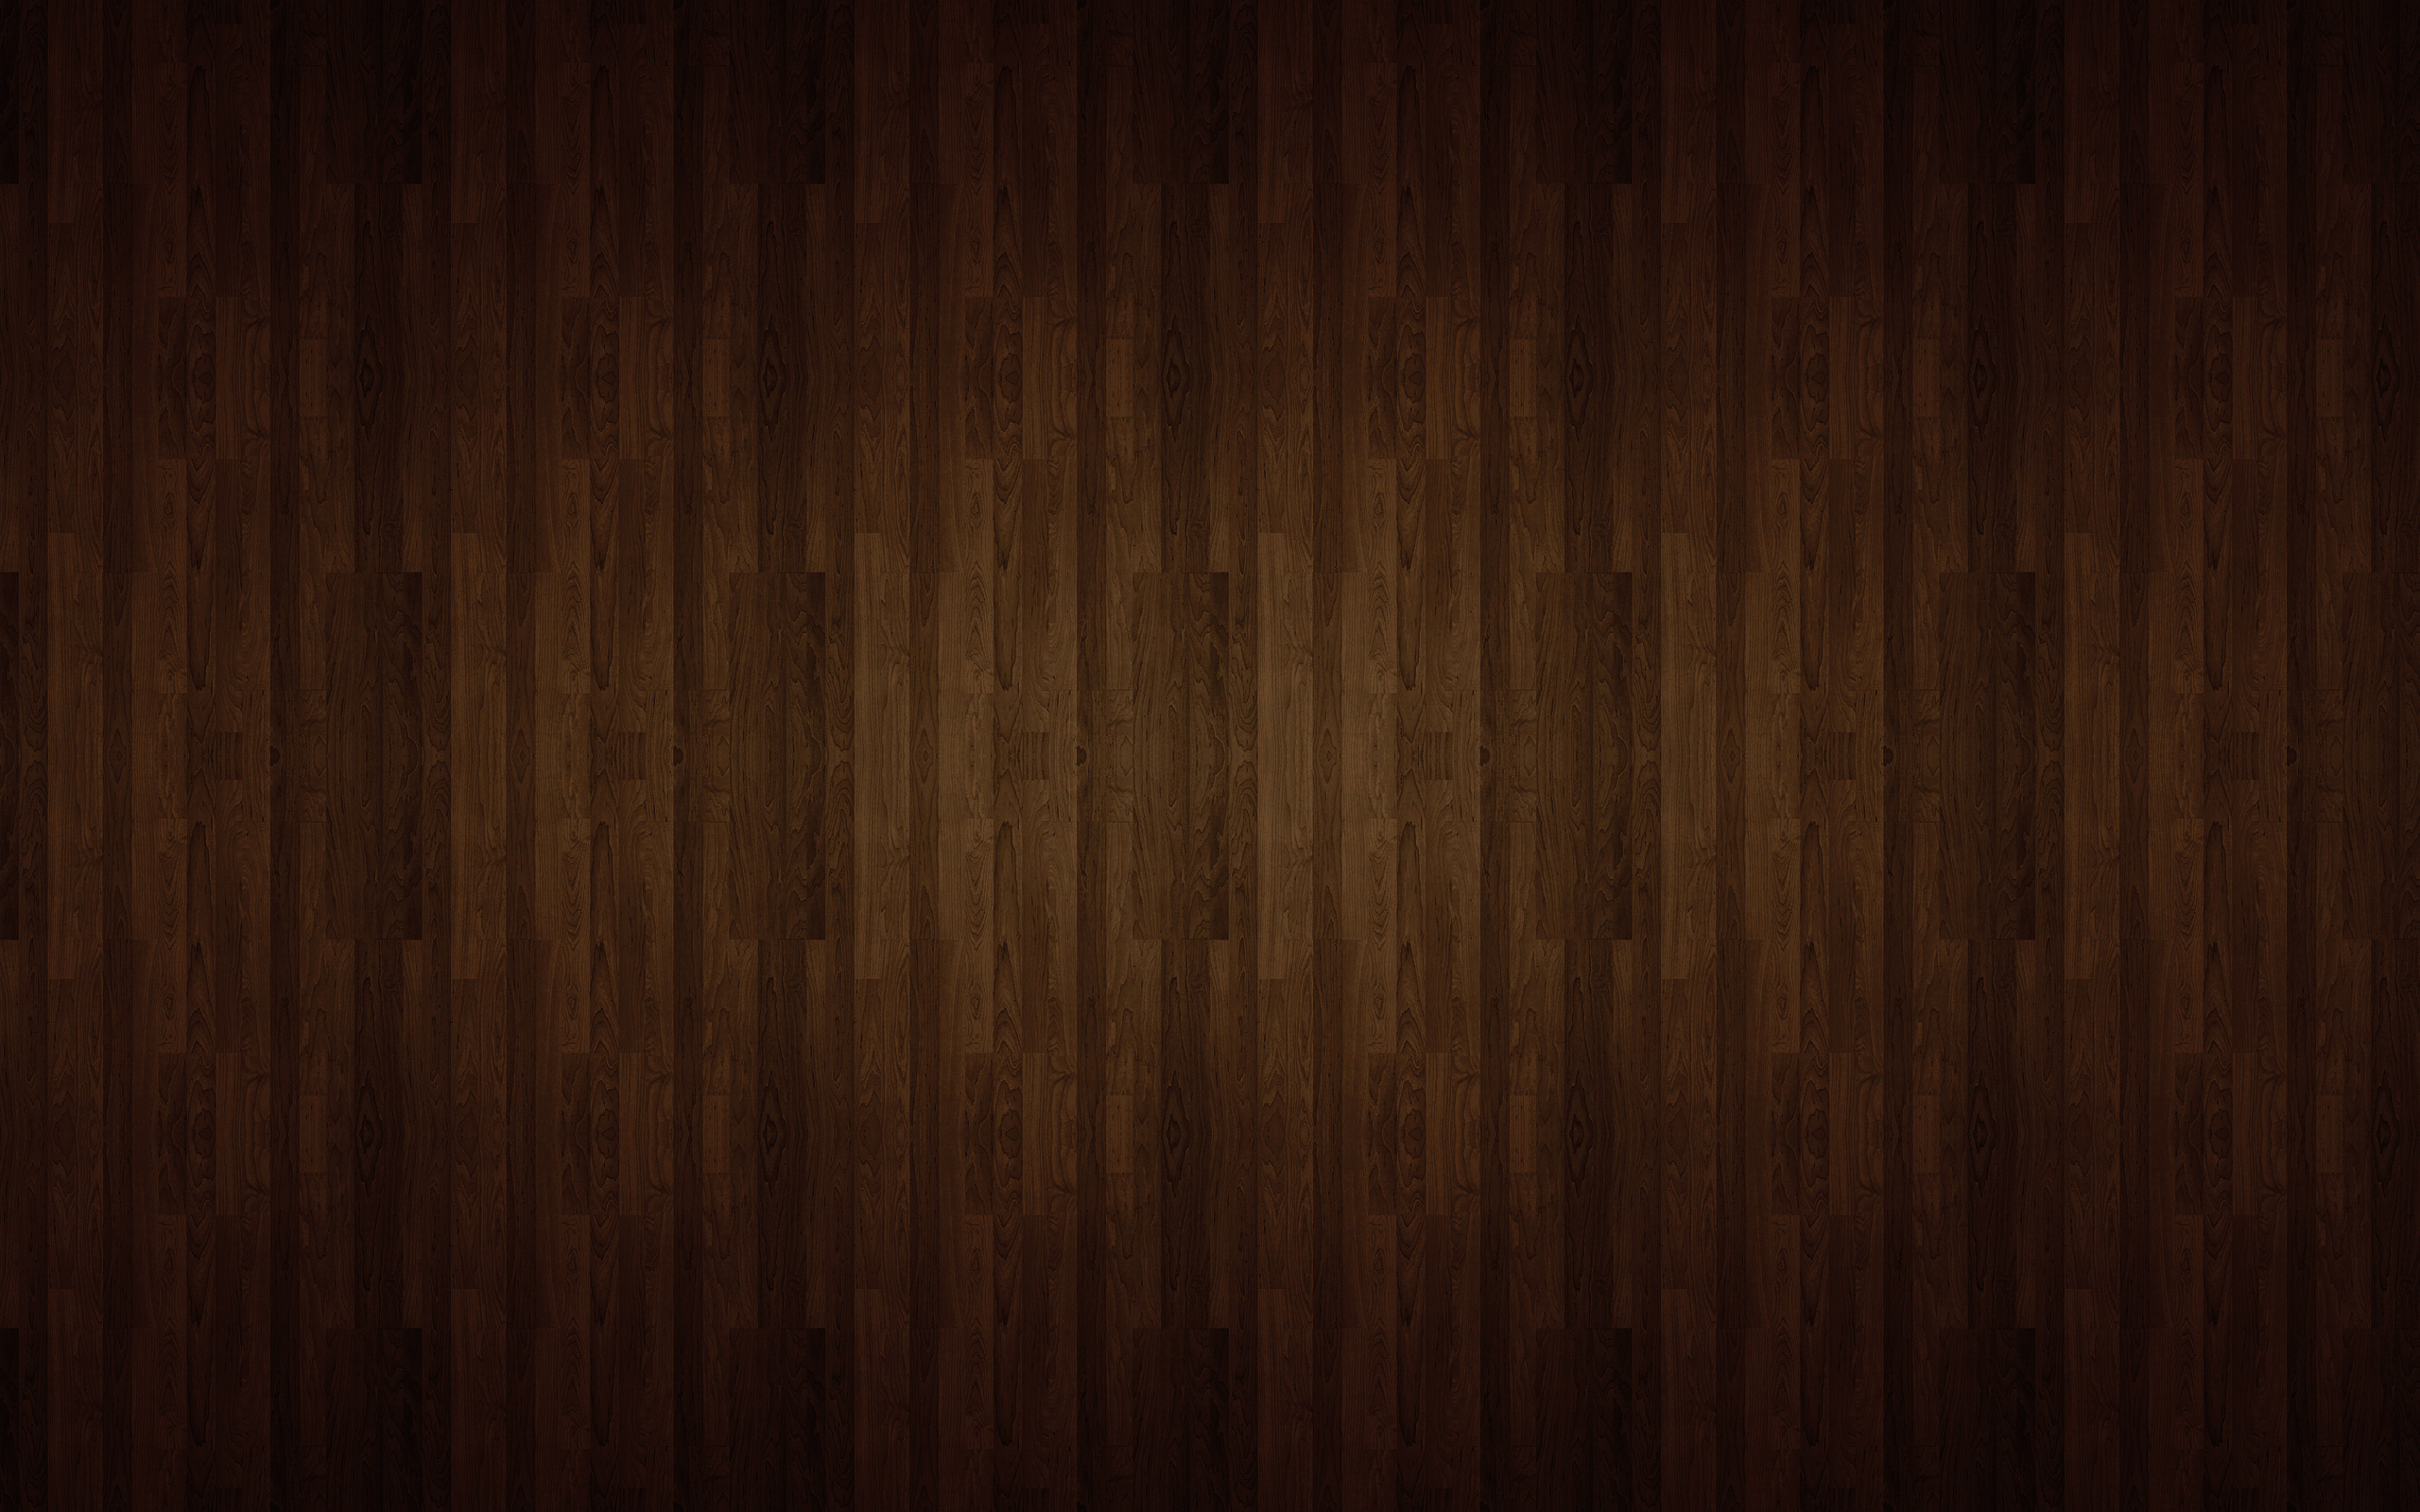 Giấy dán tường gỗ: Giấy dán tường gỗ được thiết kế để tạo cảm giác như đang sống trong nhà gỗ, mang lại sự ấm áp cho không gian sống của bạn. Với vẻ đẹp tự nhiên và đa dạng về màu sắc và kiểu dáng, giấy dán tường gỗ là một trong những sản phẩm trang trí được yêu thích nhất hiện nay. Nhấn vào hình để khám phá thêm về các mẫu giấy dán tường gỗ đẹp mắt này.